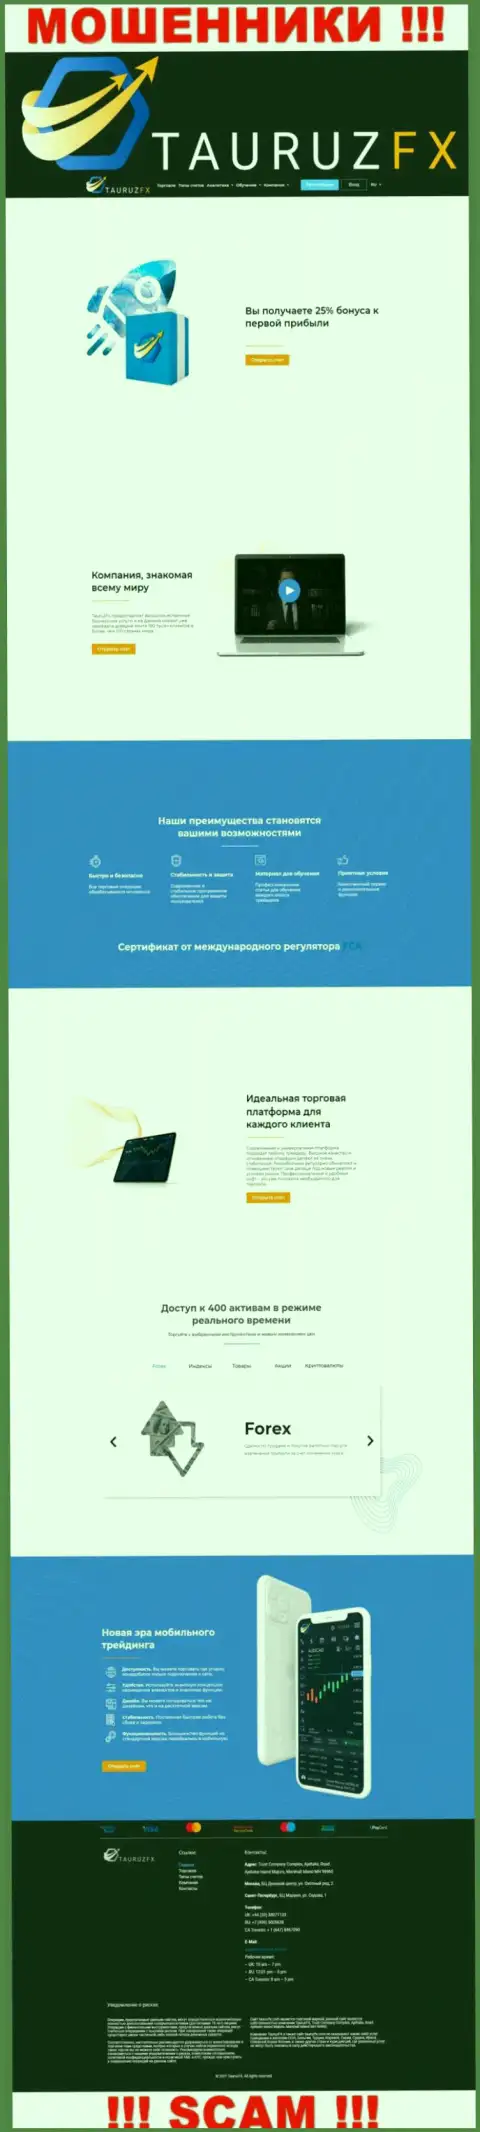 Сайт компании ТаурузФХ Ком, переполненный фейковой инфой